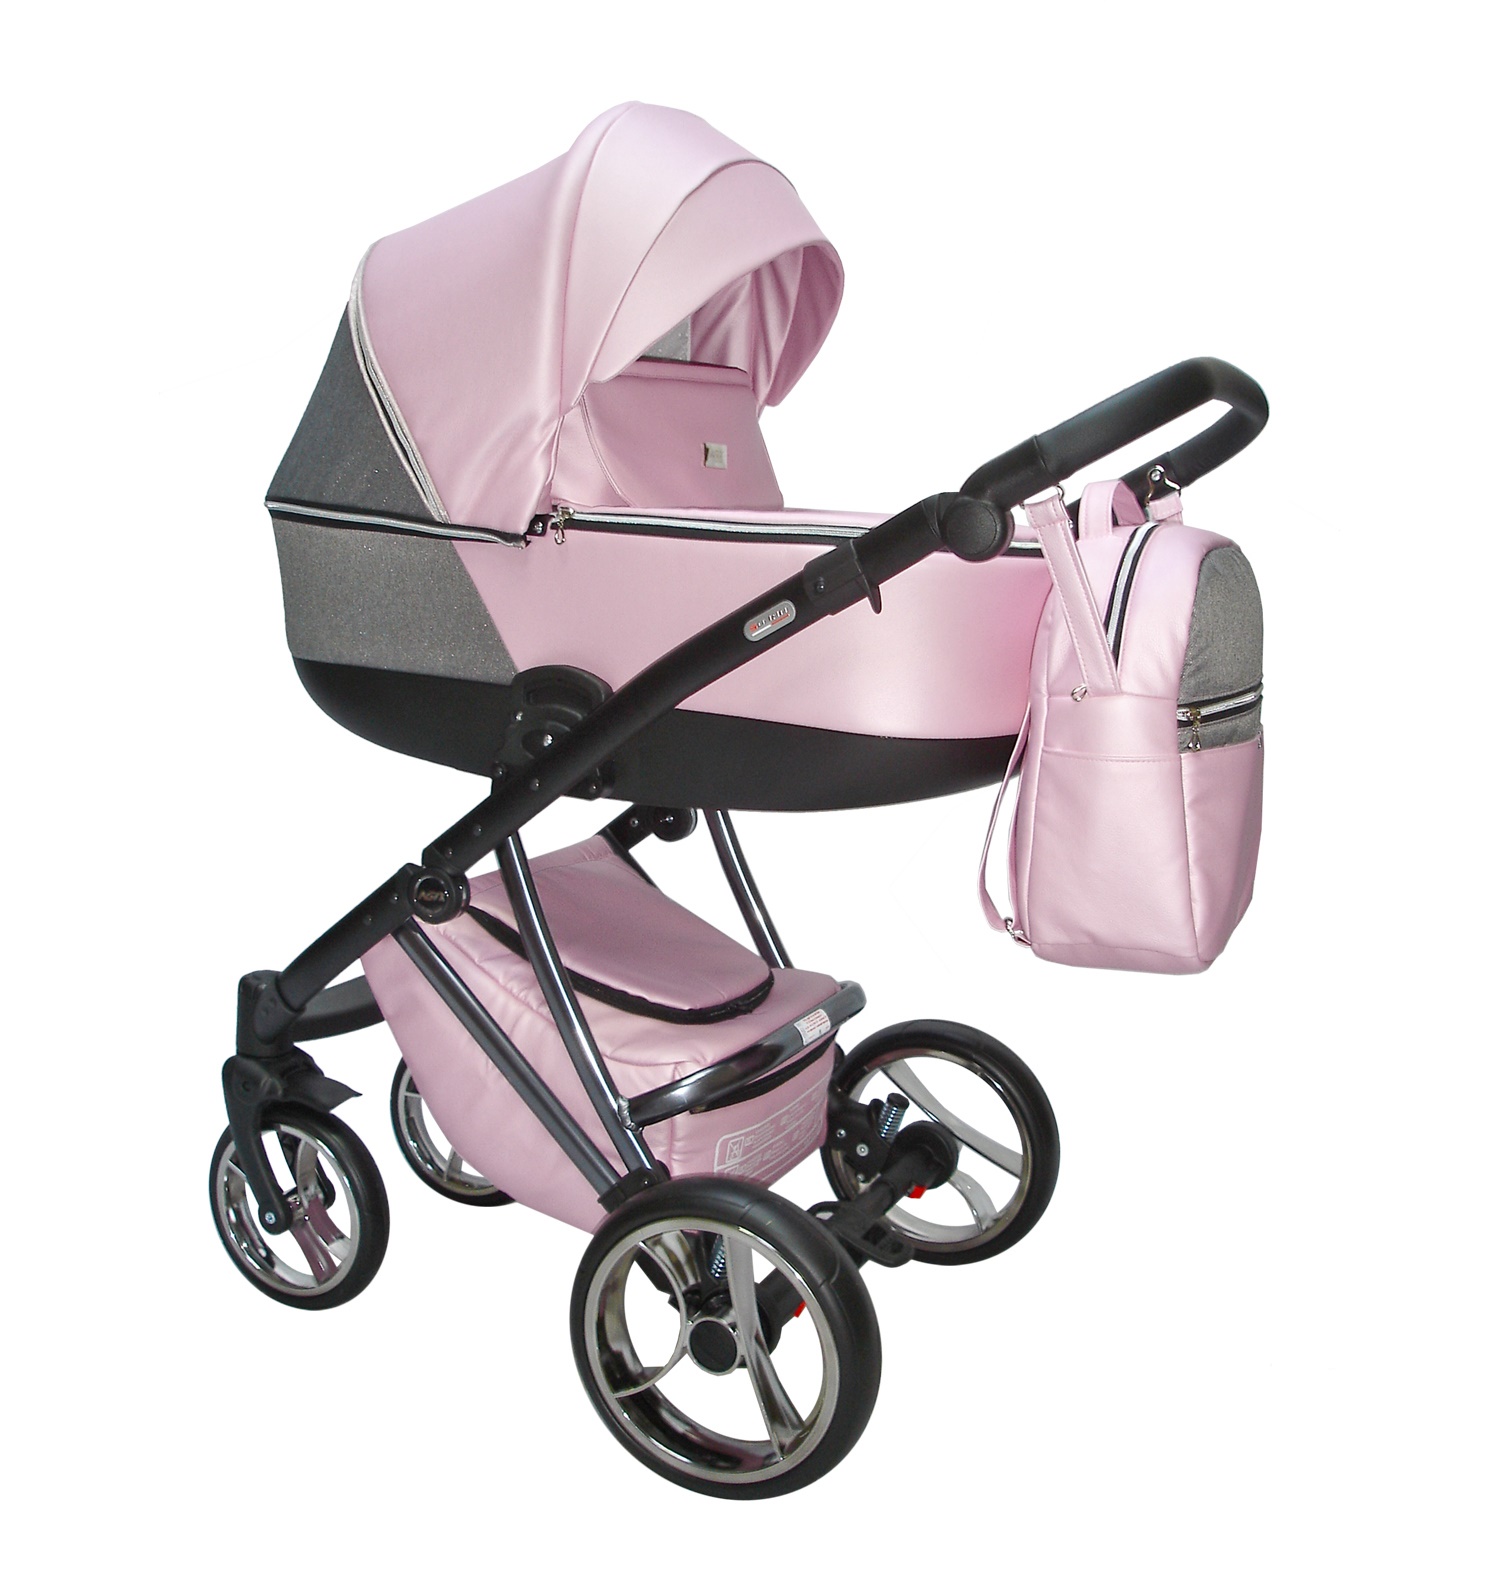 Carro de bebé rosa y gris - Agix - El mimo de mama